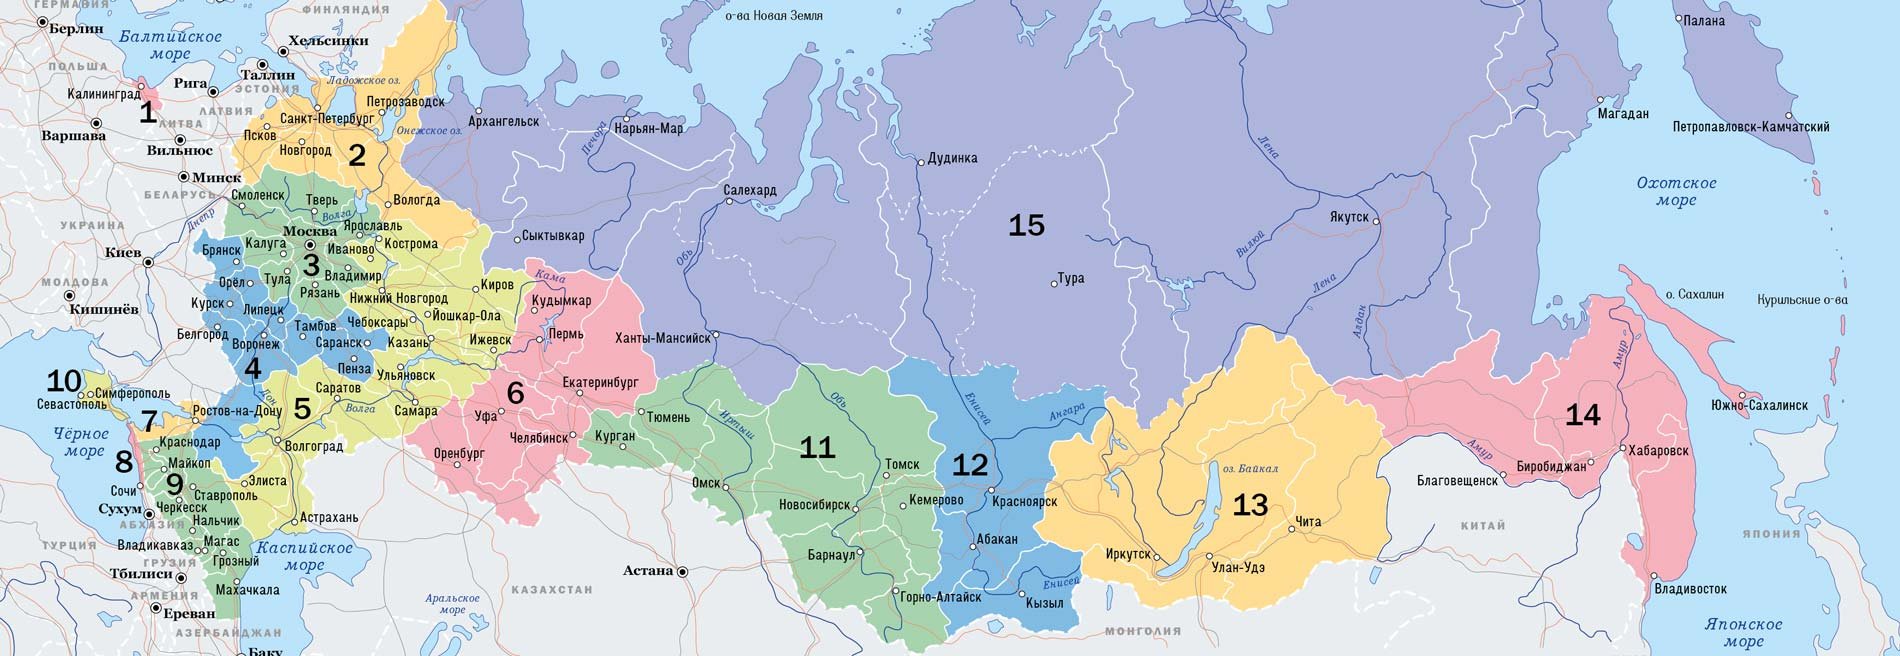 Рекреационные районы России